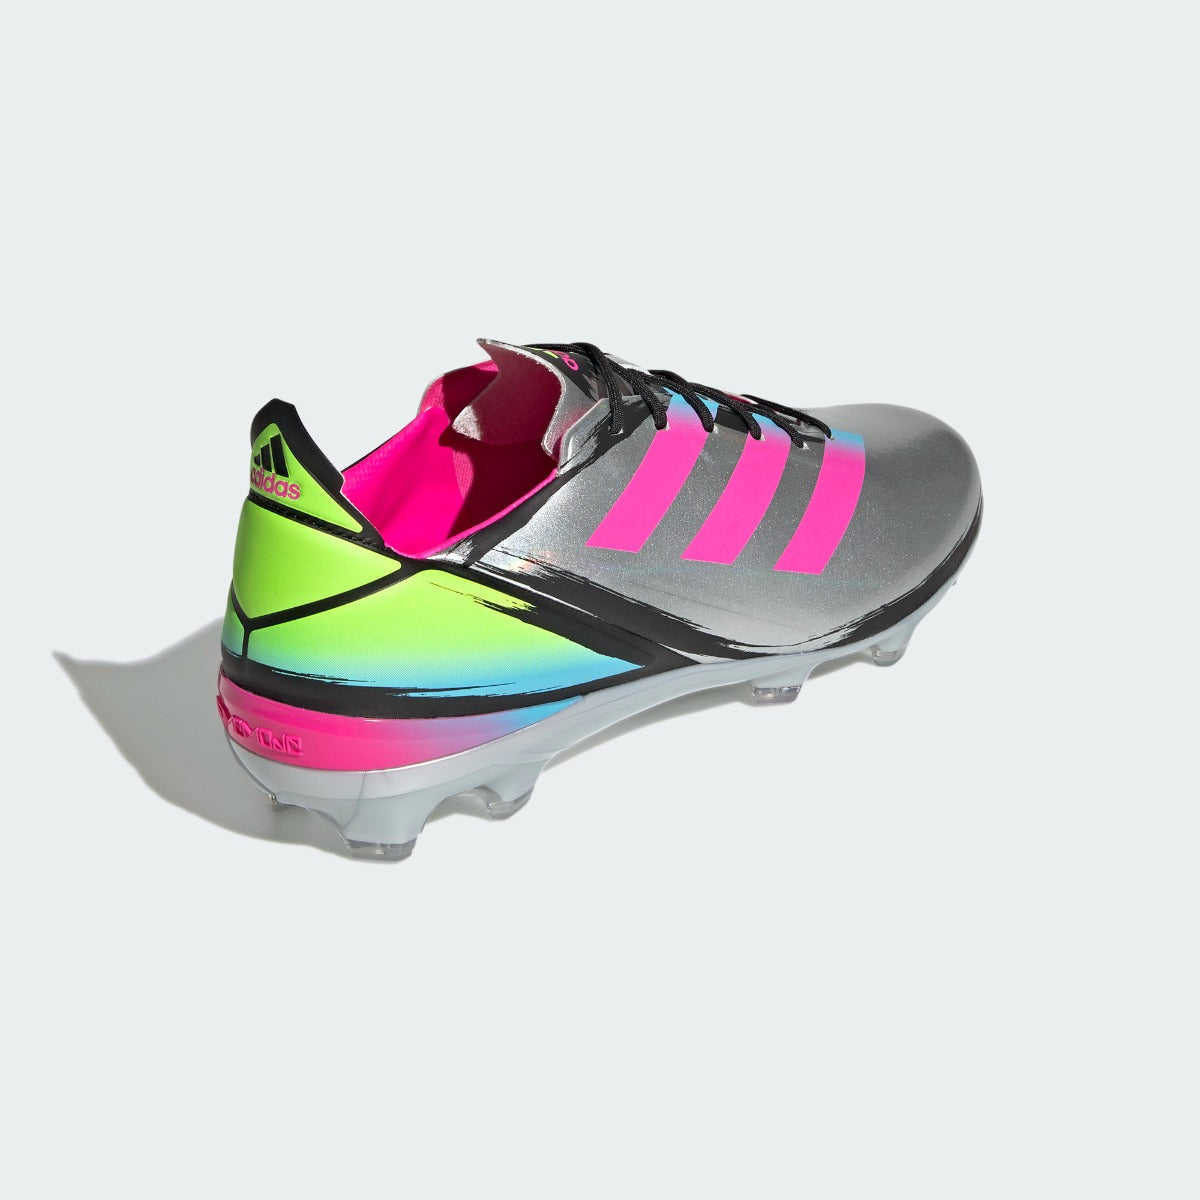 Adidas GameMode FG - Silver-Cyan-Show Pink (Diagonal 1)